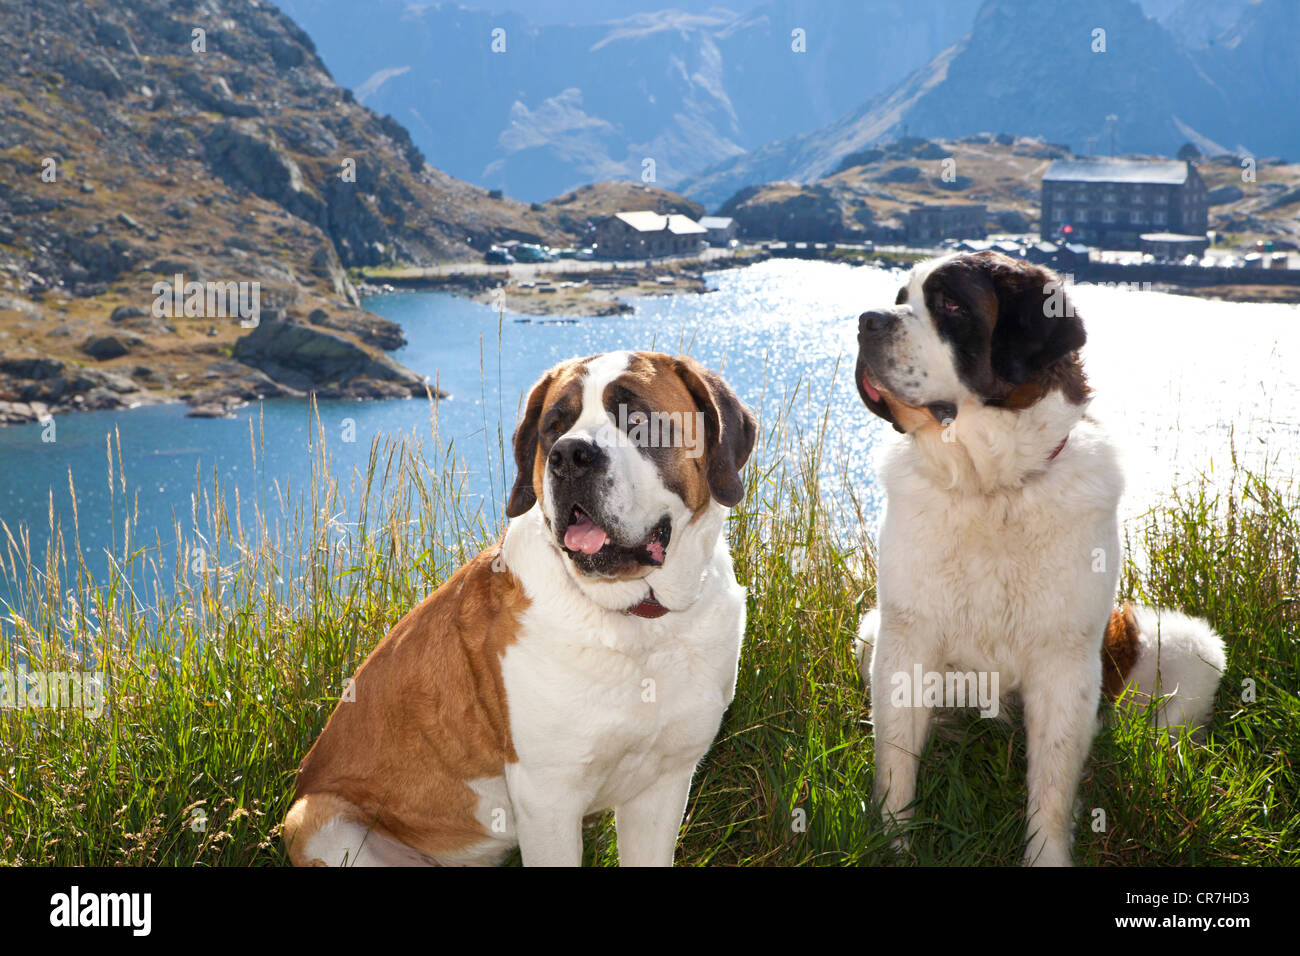 Barry Dogs Stockfotos und -bilder Kaufen - Alamy